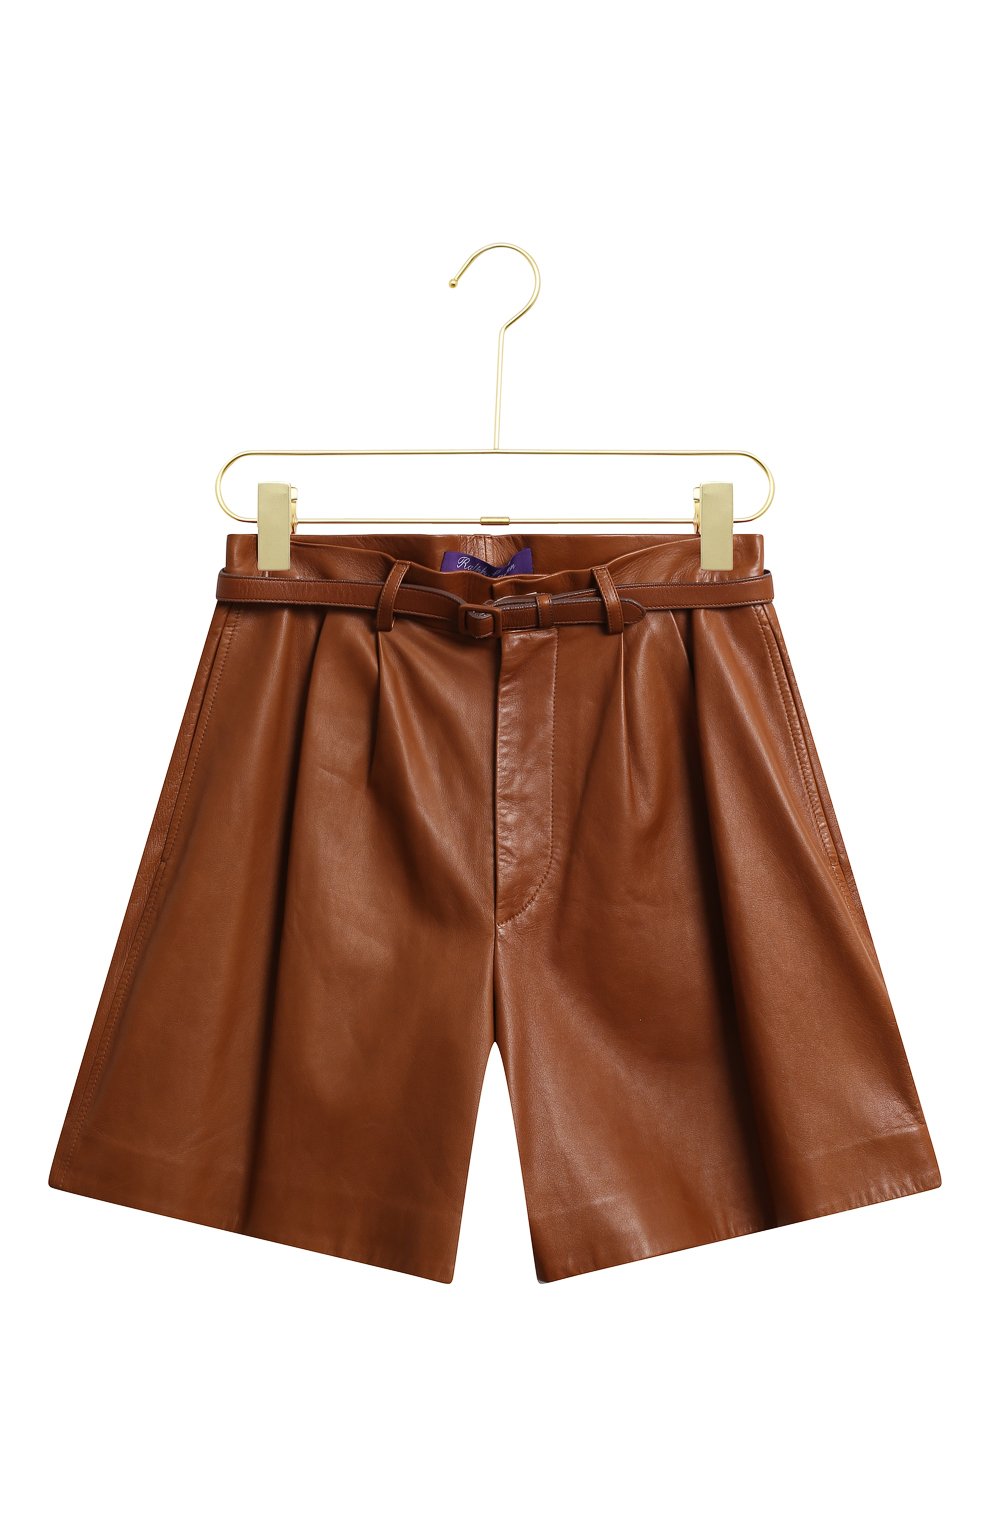 Кожаные шорты | Ralph Lauren | Коричневый - 1